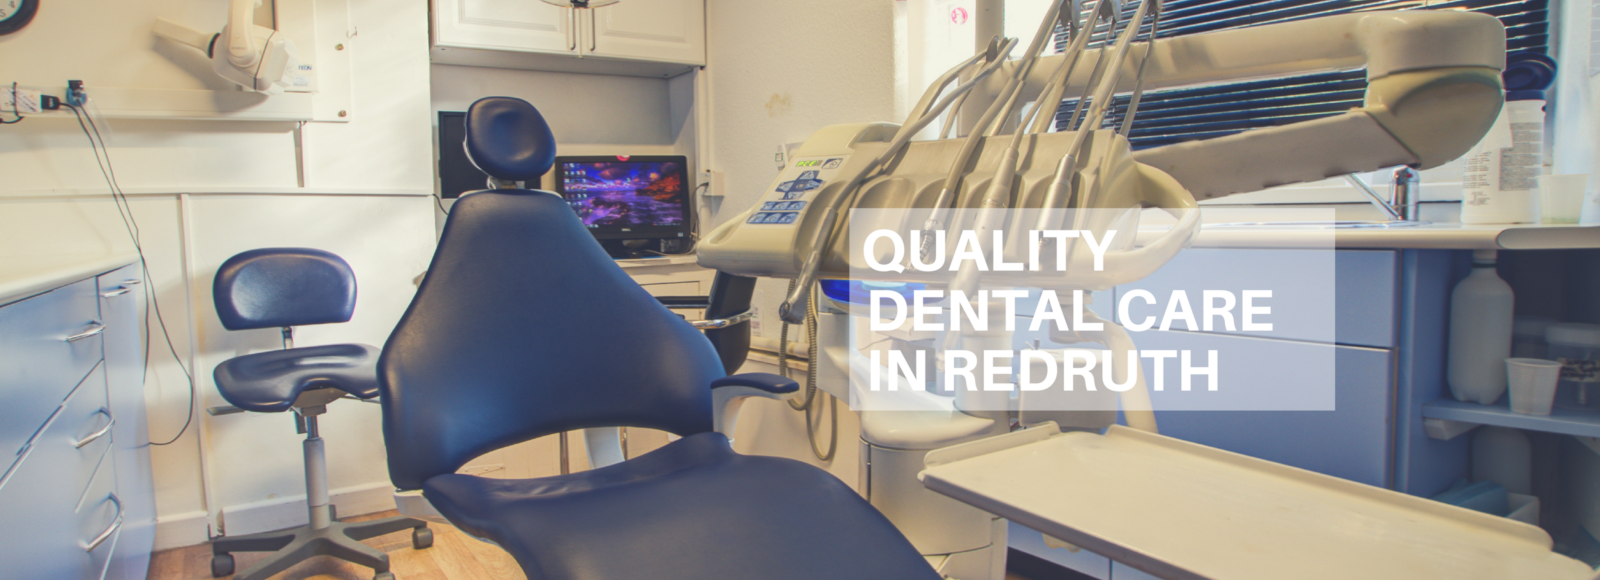 Dental Care in Redruth